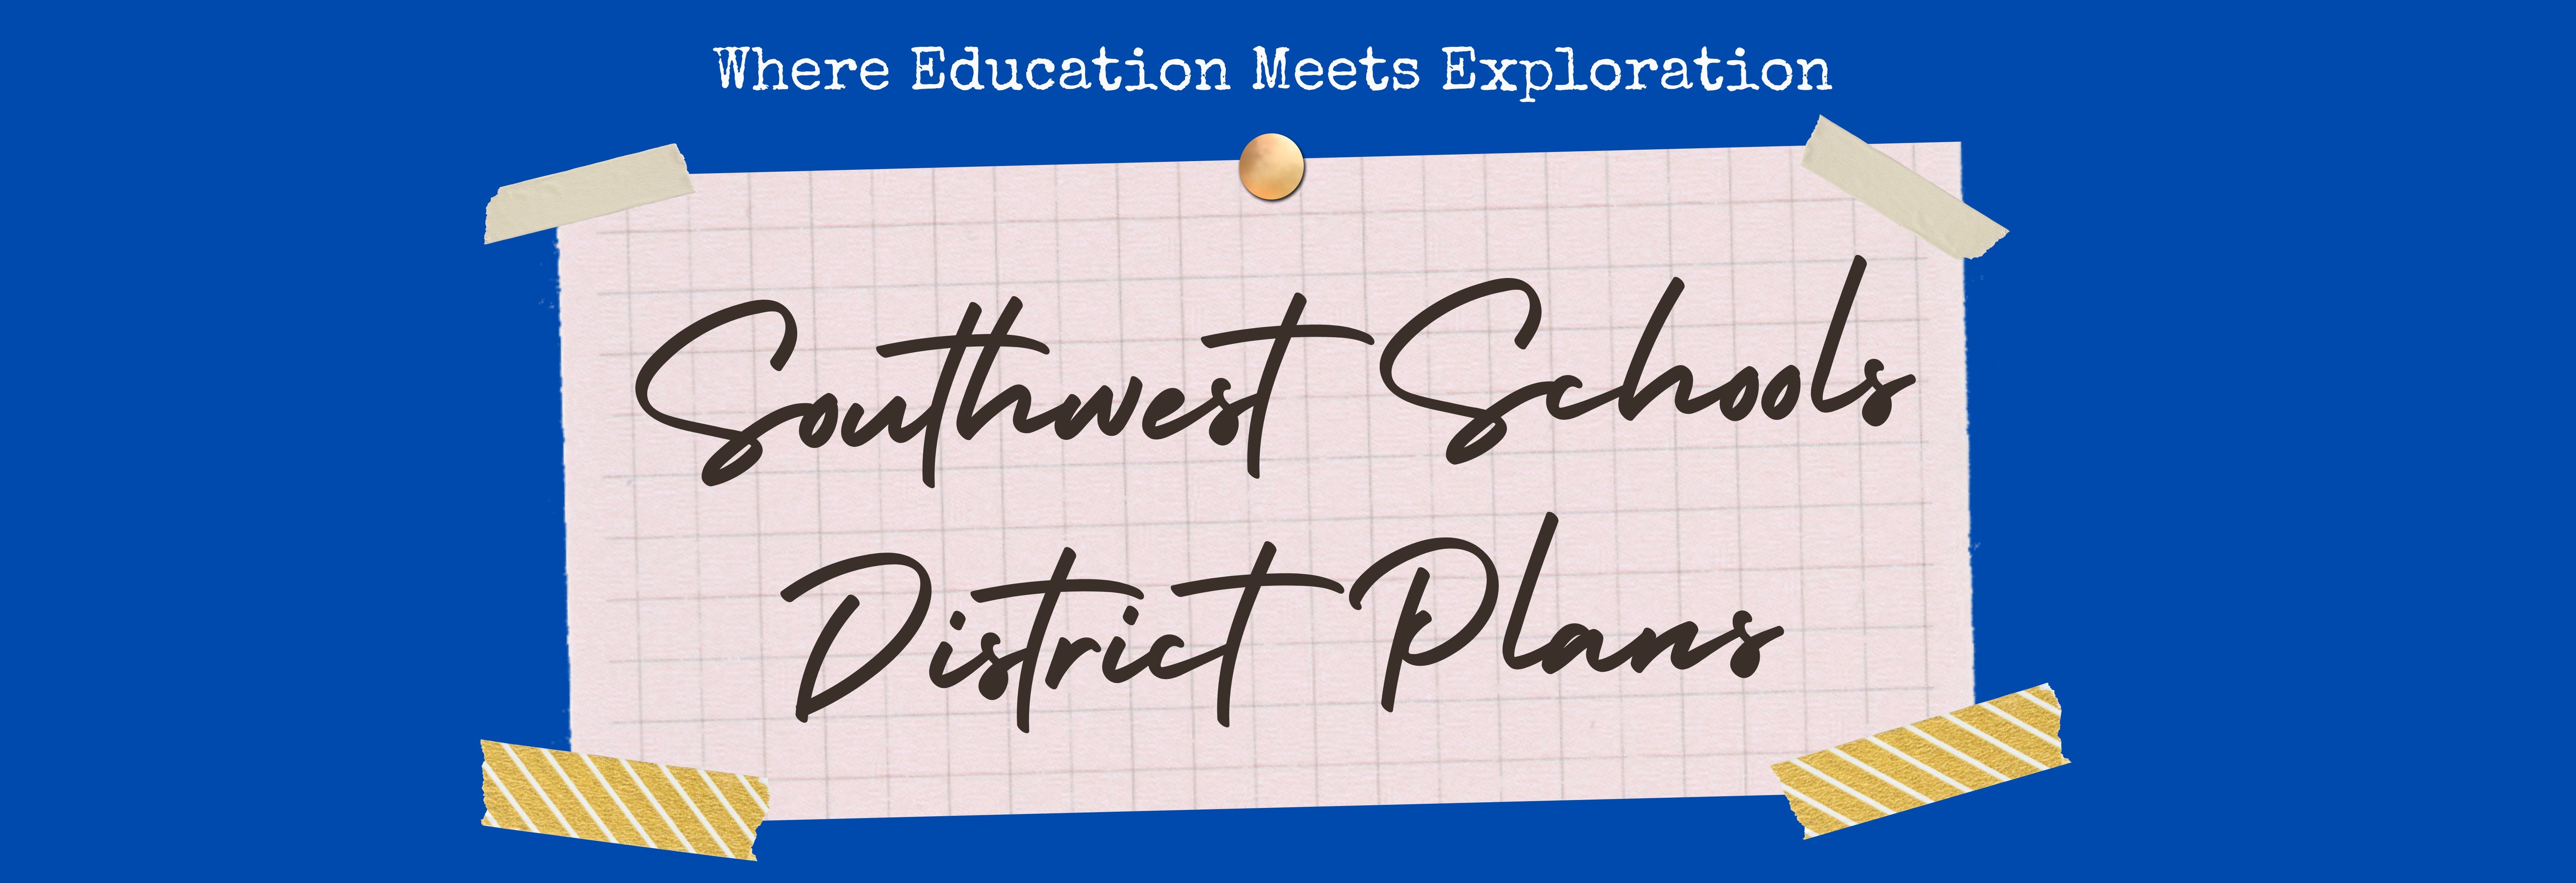 Southwest Schools District Plans